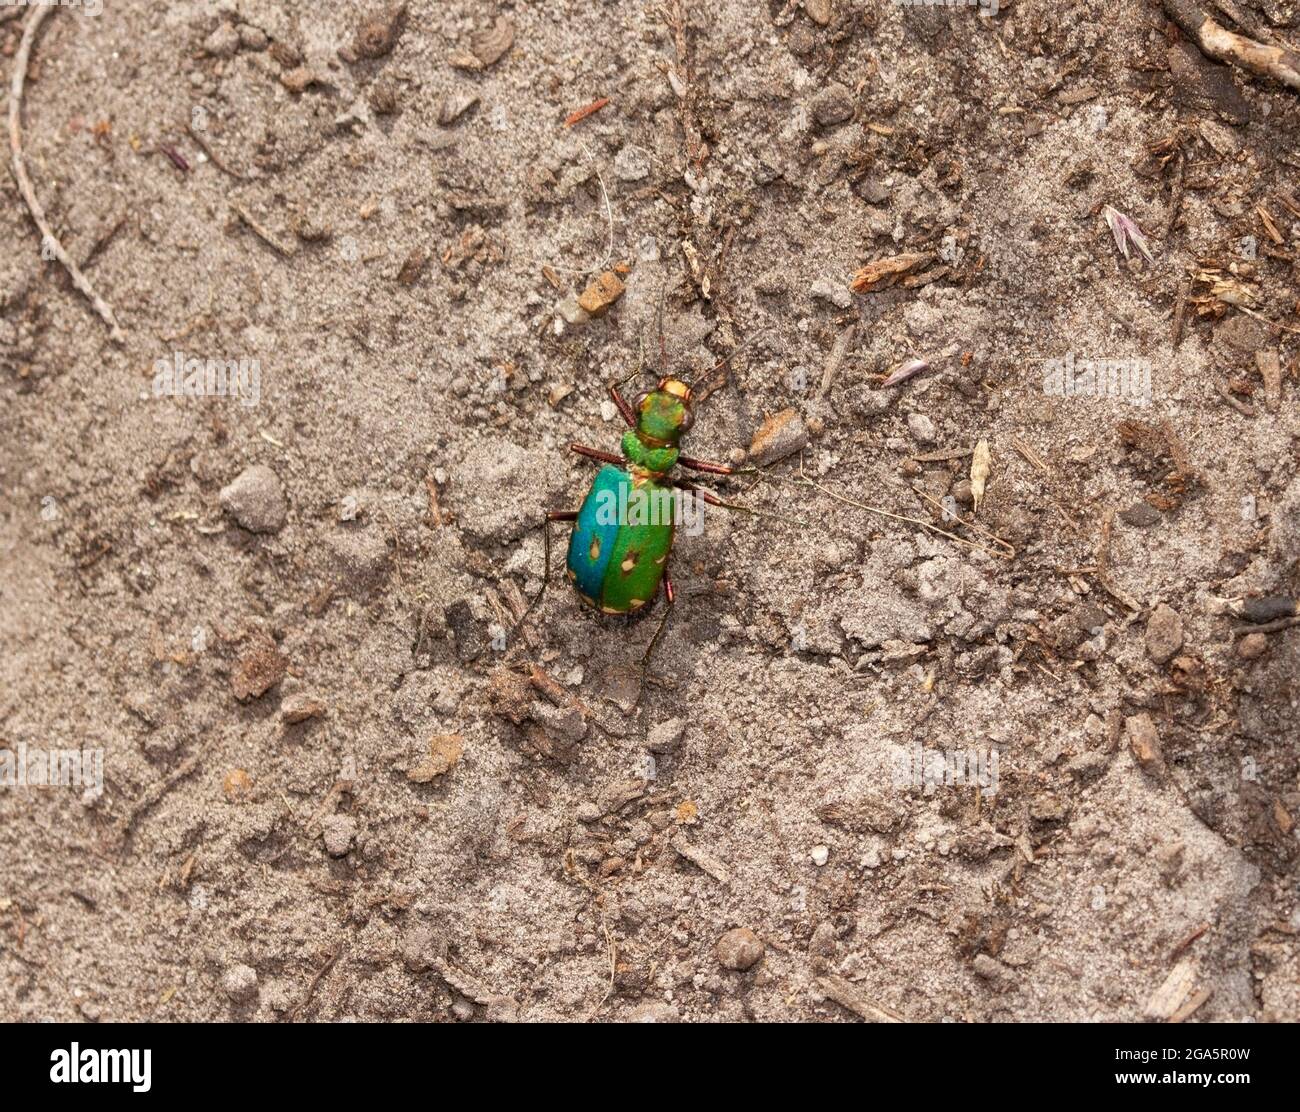 Der Green Tiger Beetle, einer der langbeinigen und schnell laufenden Raubkäfer, bevorzugt Sandflächen und raubt Ameisen und kriechende Insekten. Stockfoto